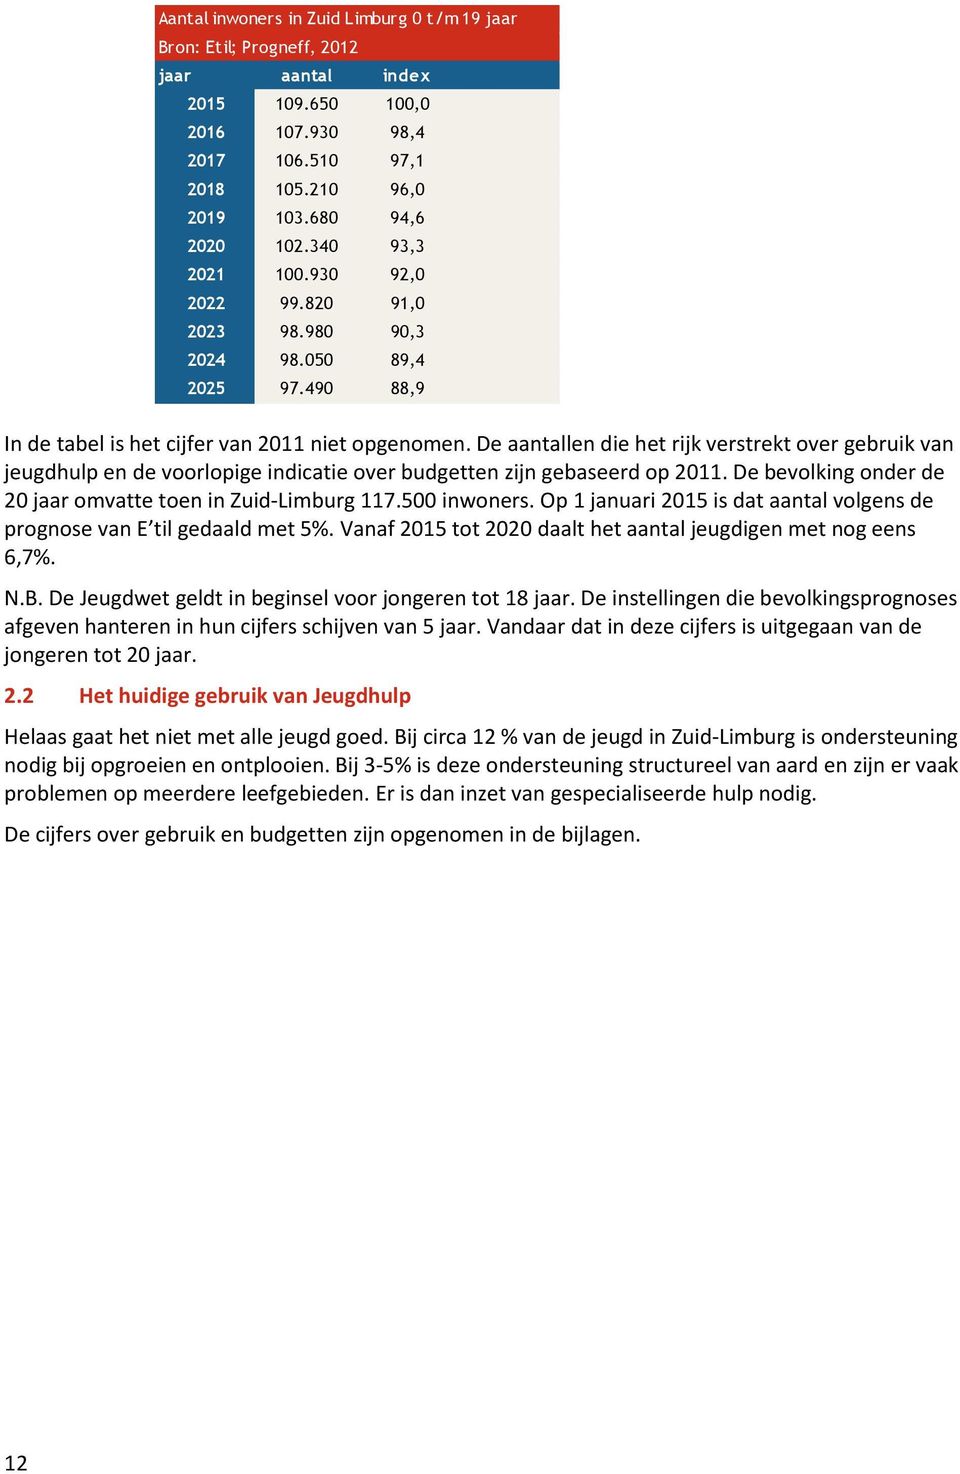 De aantallen die het rijk verstrekt over gebruik van jeugdhulp en de voorlopige indicatie over budgetten zijn gebaseerd op 2011. De bevolking onder de 20 jaar omvatte toen in Zuid-Limburg 117.